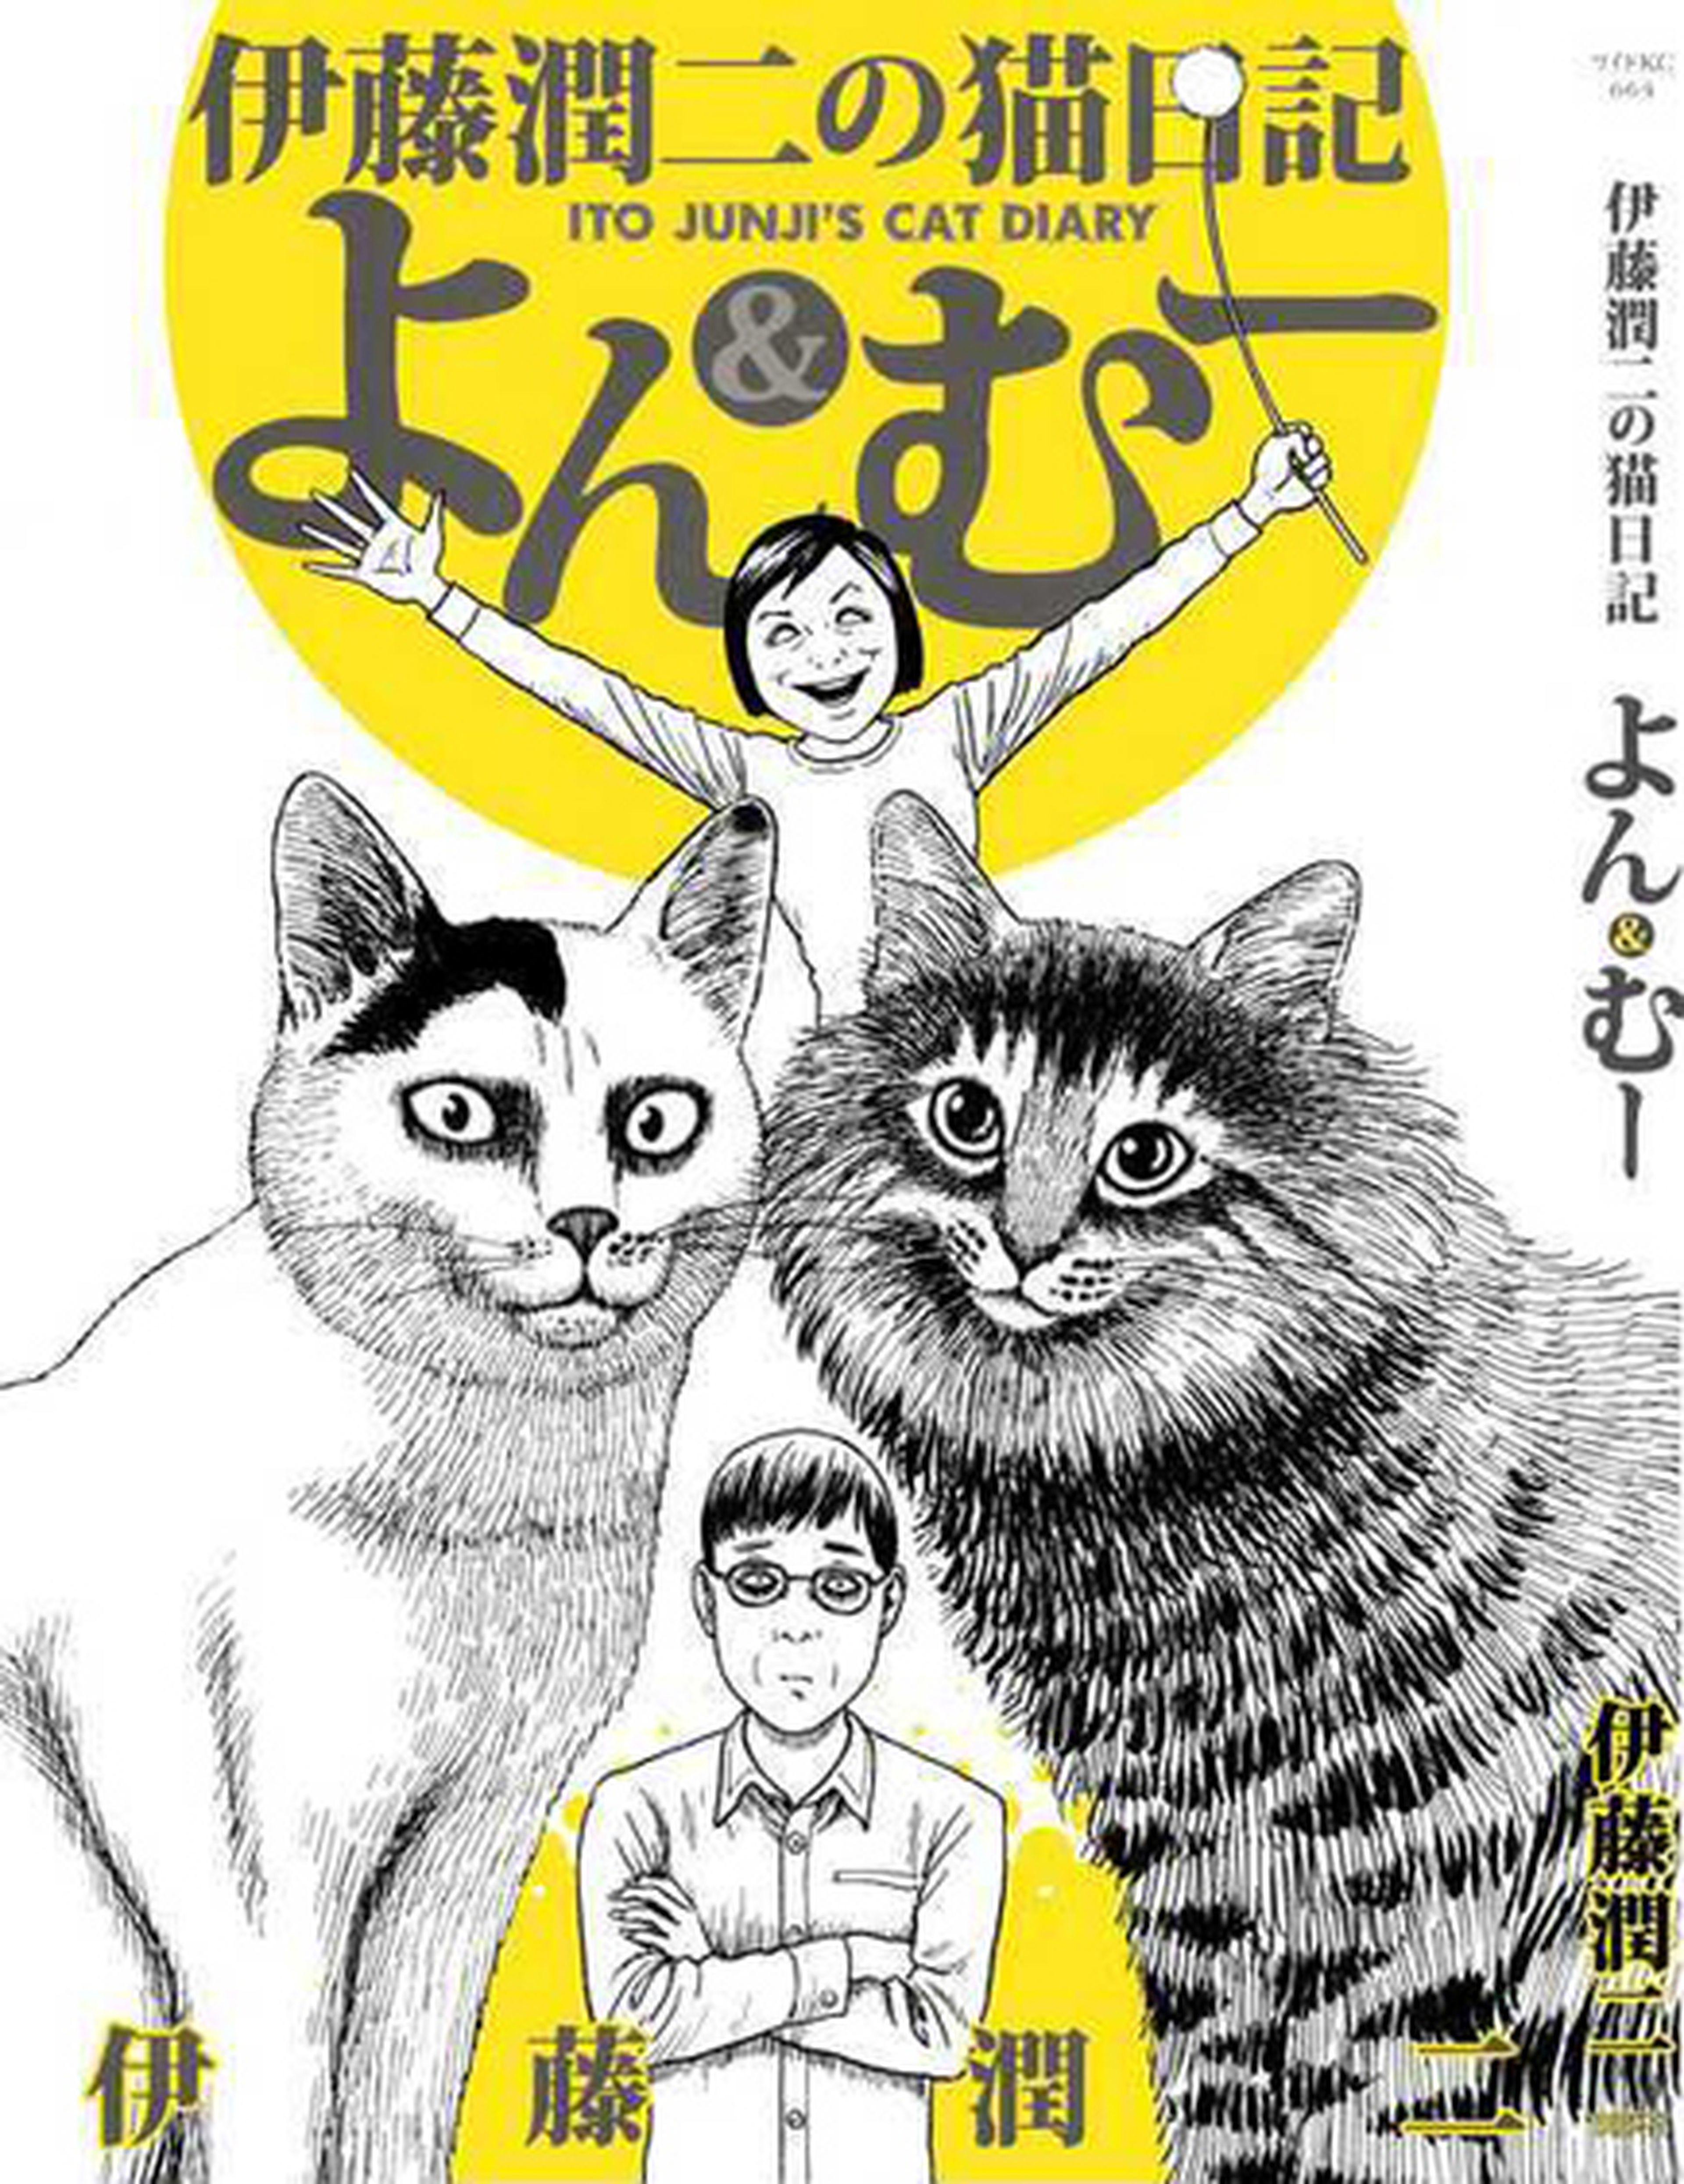 El diario gatuno de Junji Ito se publicará en verano